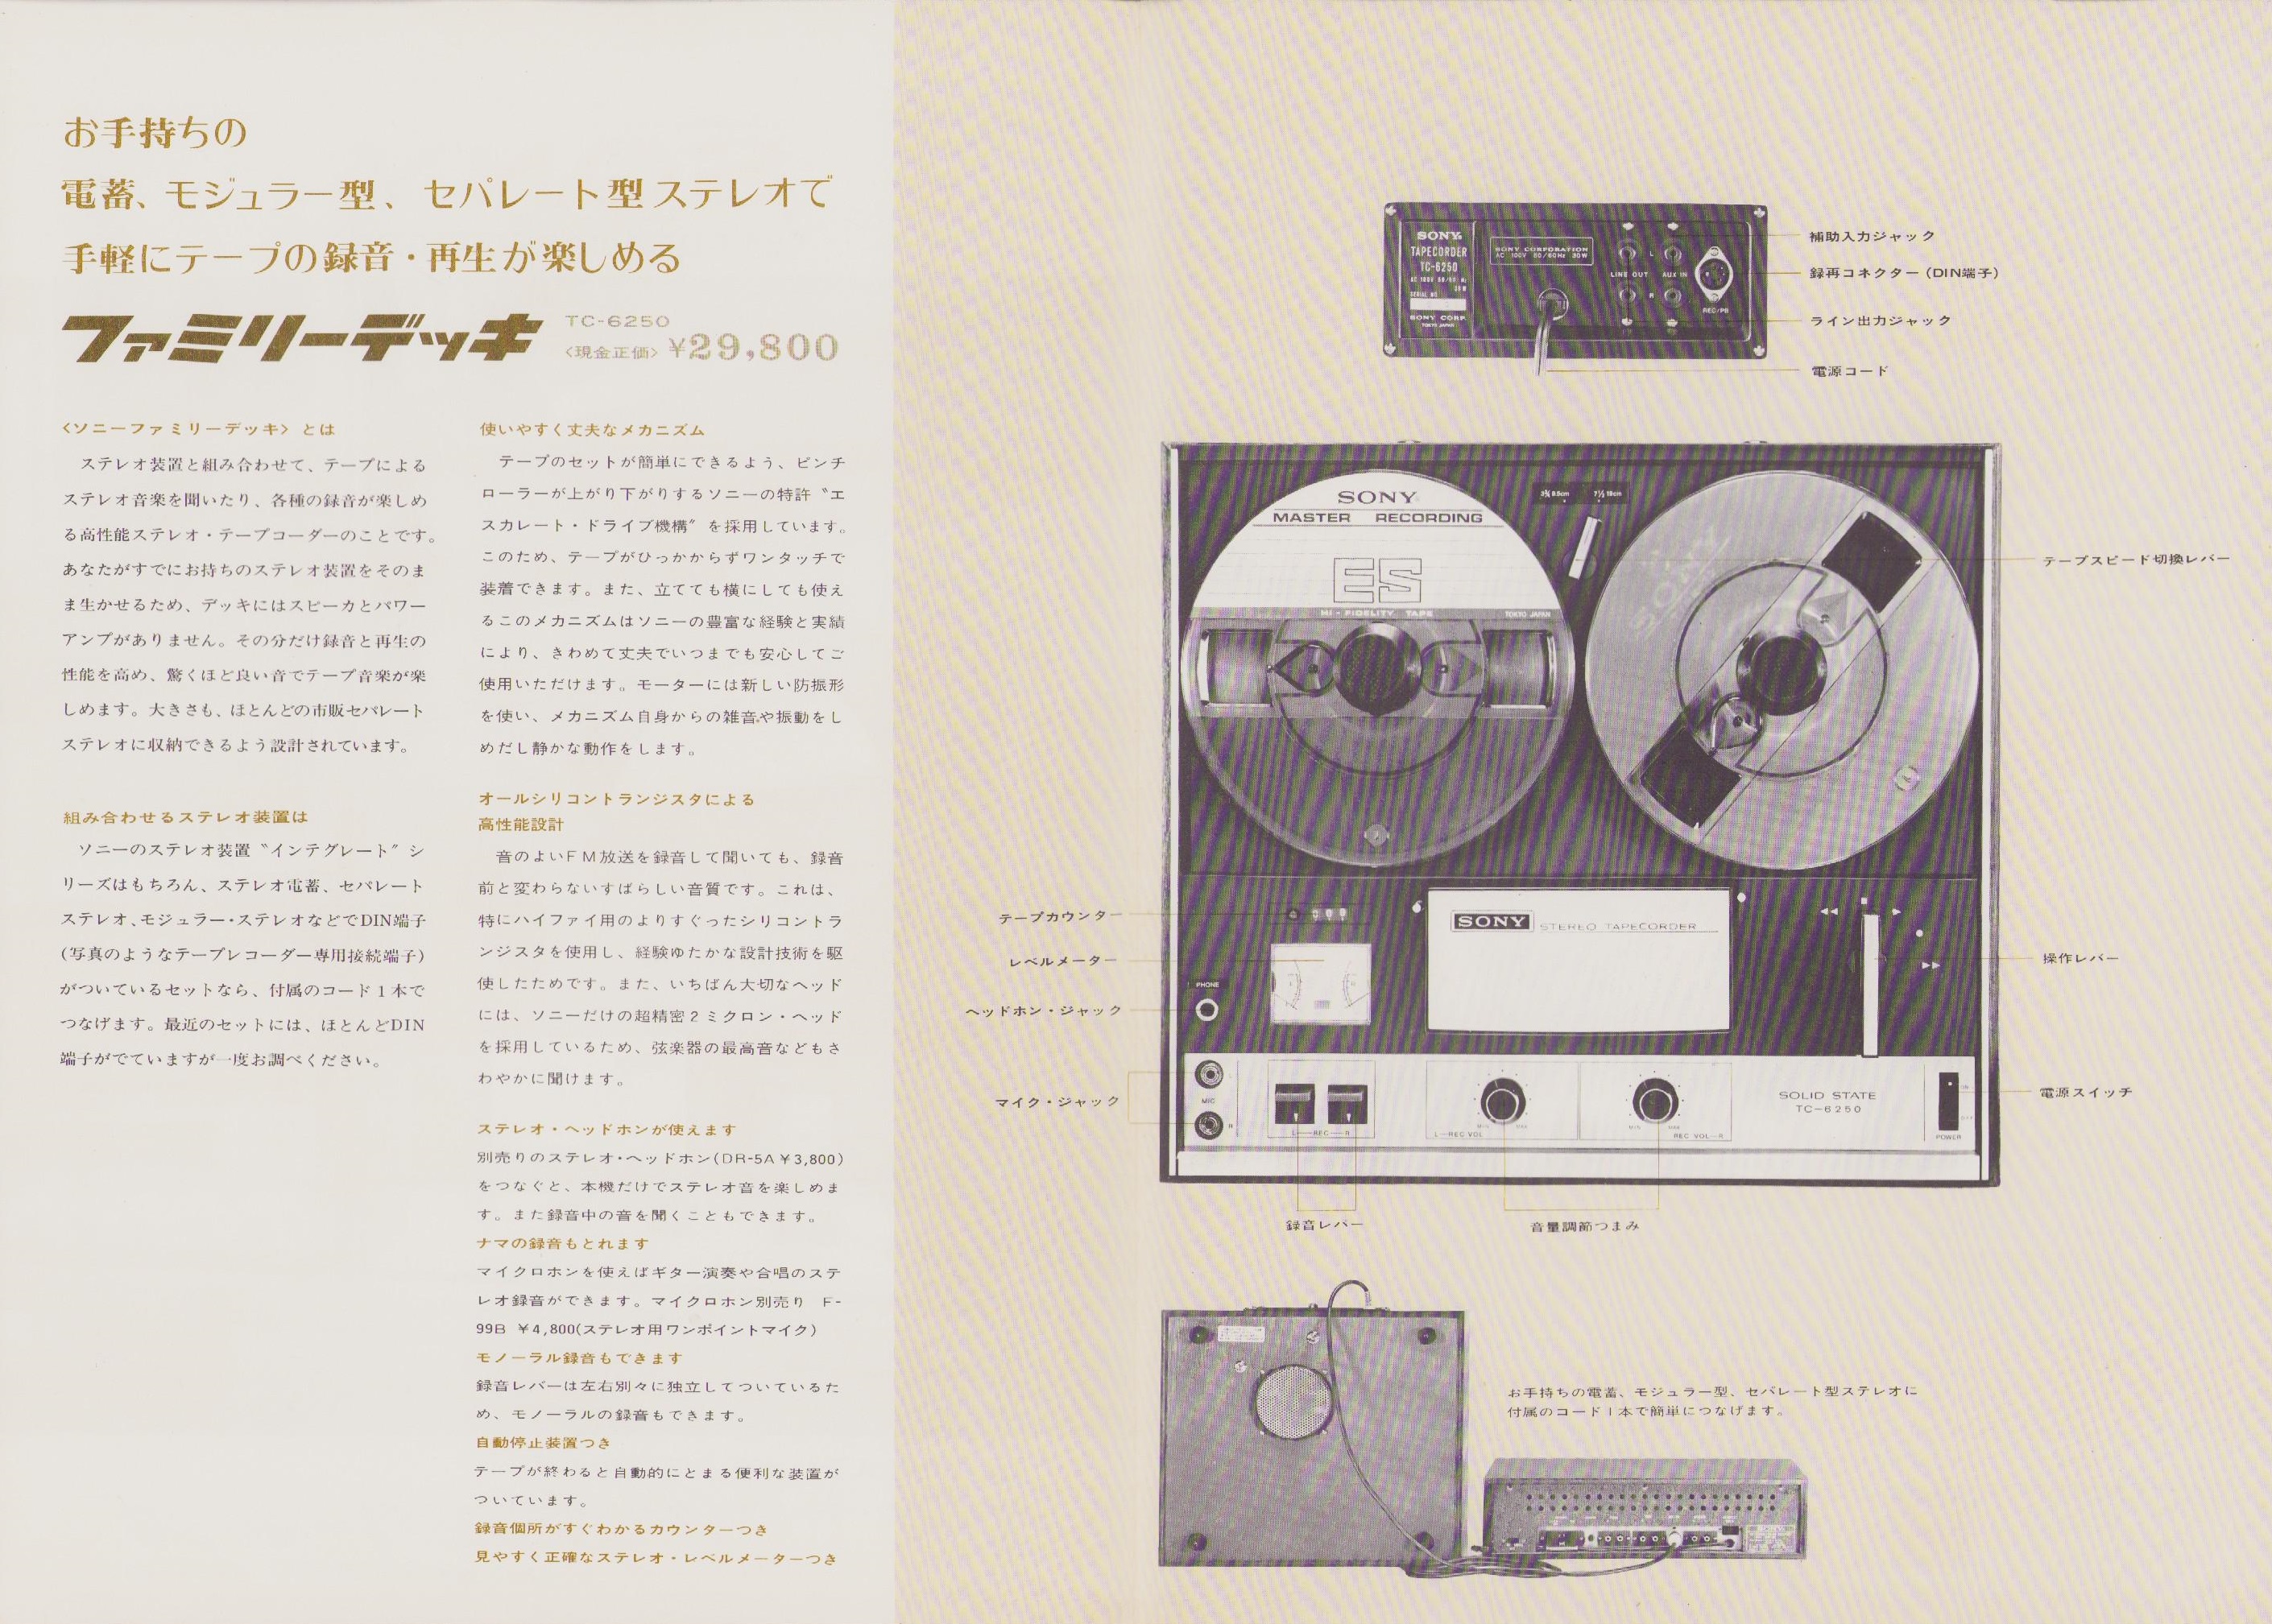 ファミリーコンピュータマガジン 1989年 No.20